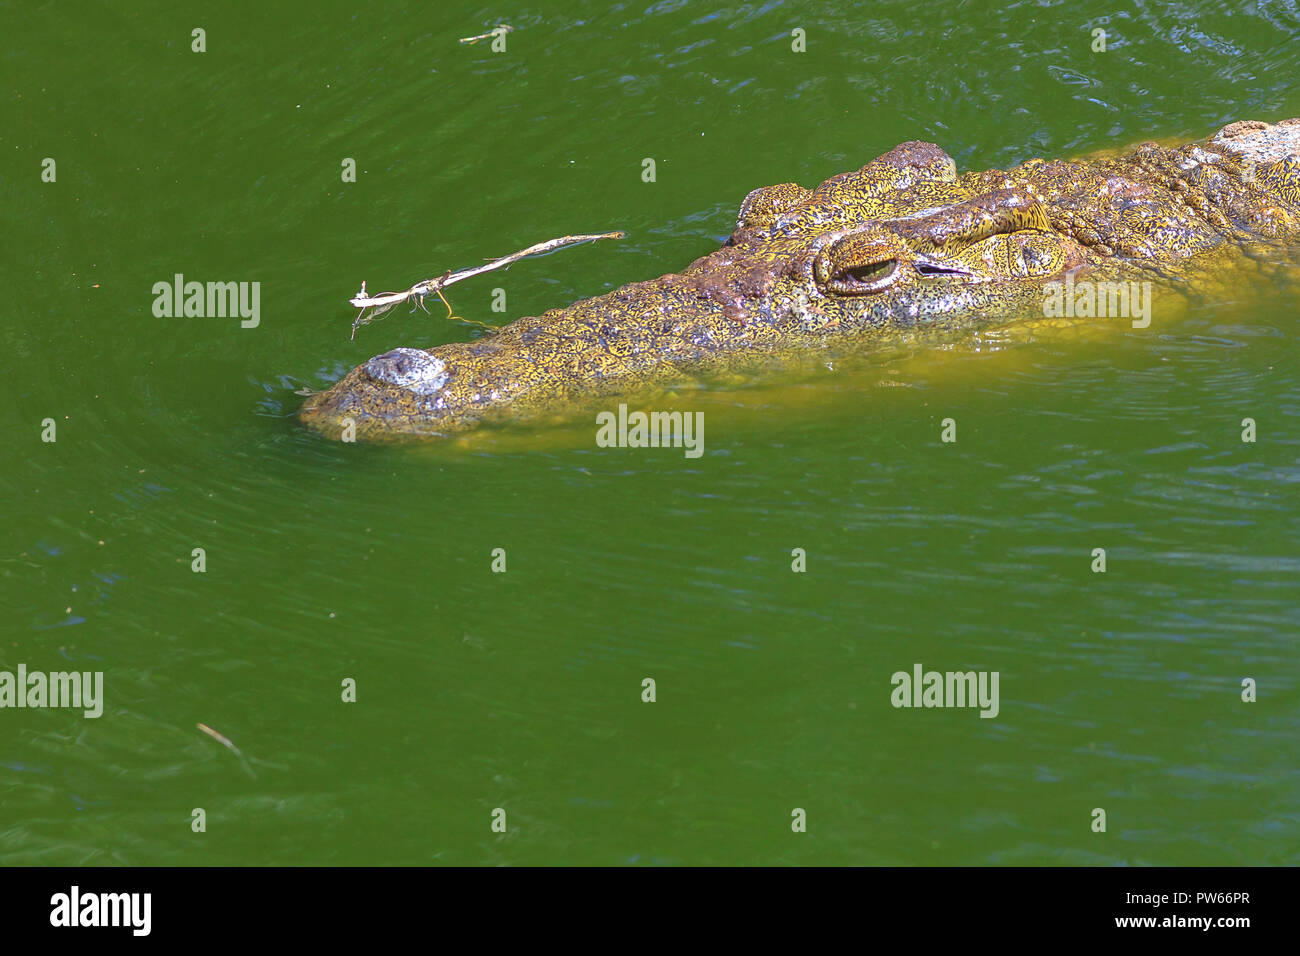 Nahaufnahme der Afrikanischen Krokodil Gesicht im Wasser in Ezemvelo KZN Wildlife. Nilkrokodile in St. Lucia Estuary in iSimangaliso Wetland Park, Südafrika, eines der besten Safari Destinationen. Stockfoto